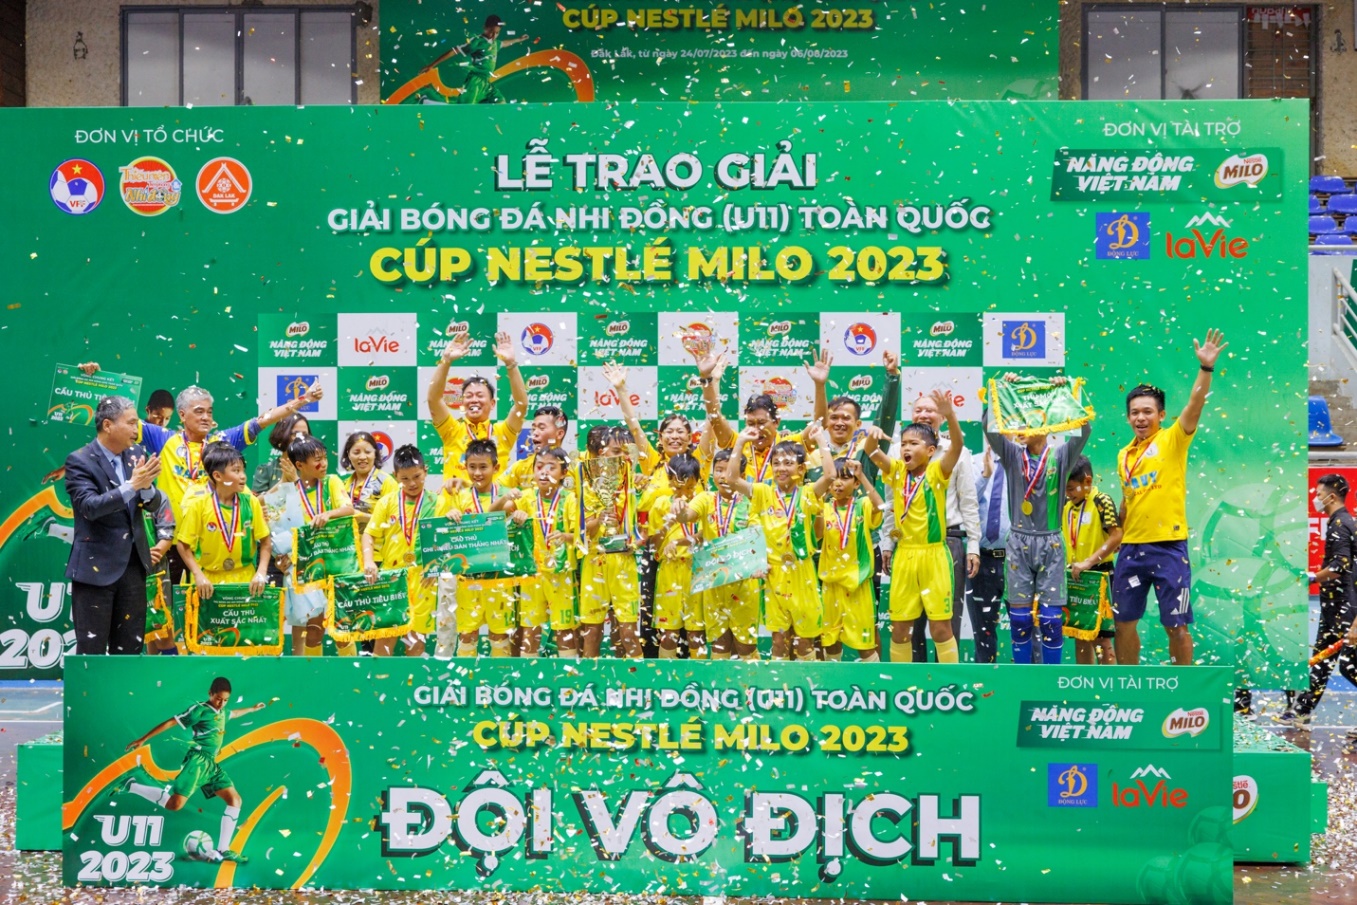 Bế mạc giải bóng đá nhi đồng (U11) toàn quốc, Nestlé MILO trao tặng 16 học bổng “Có chí thì nên” - Ảnh 4.